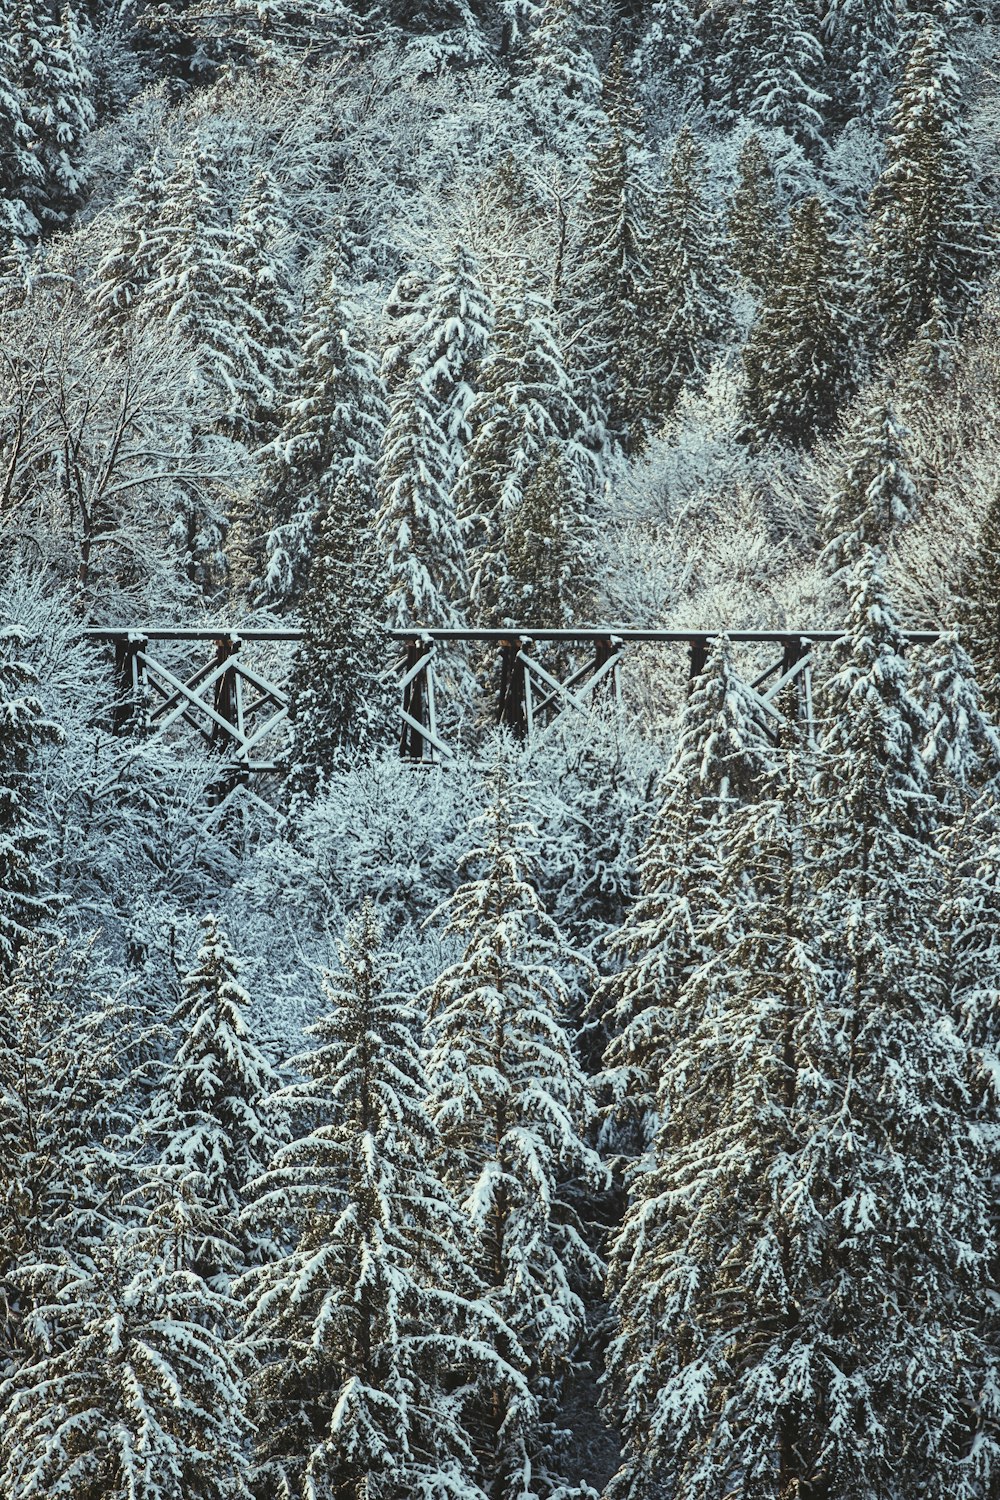 uma ponte no meio de uma floresta coberta de neve